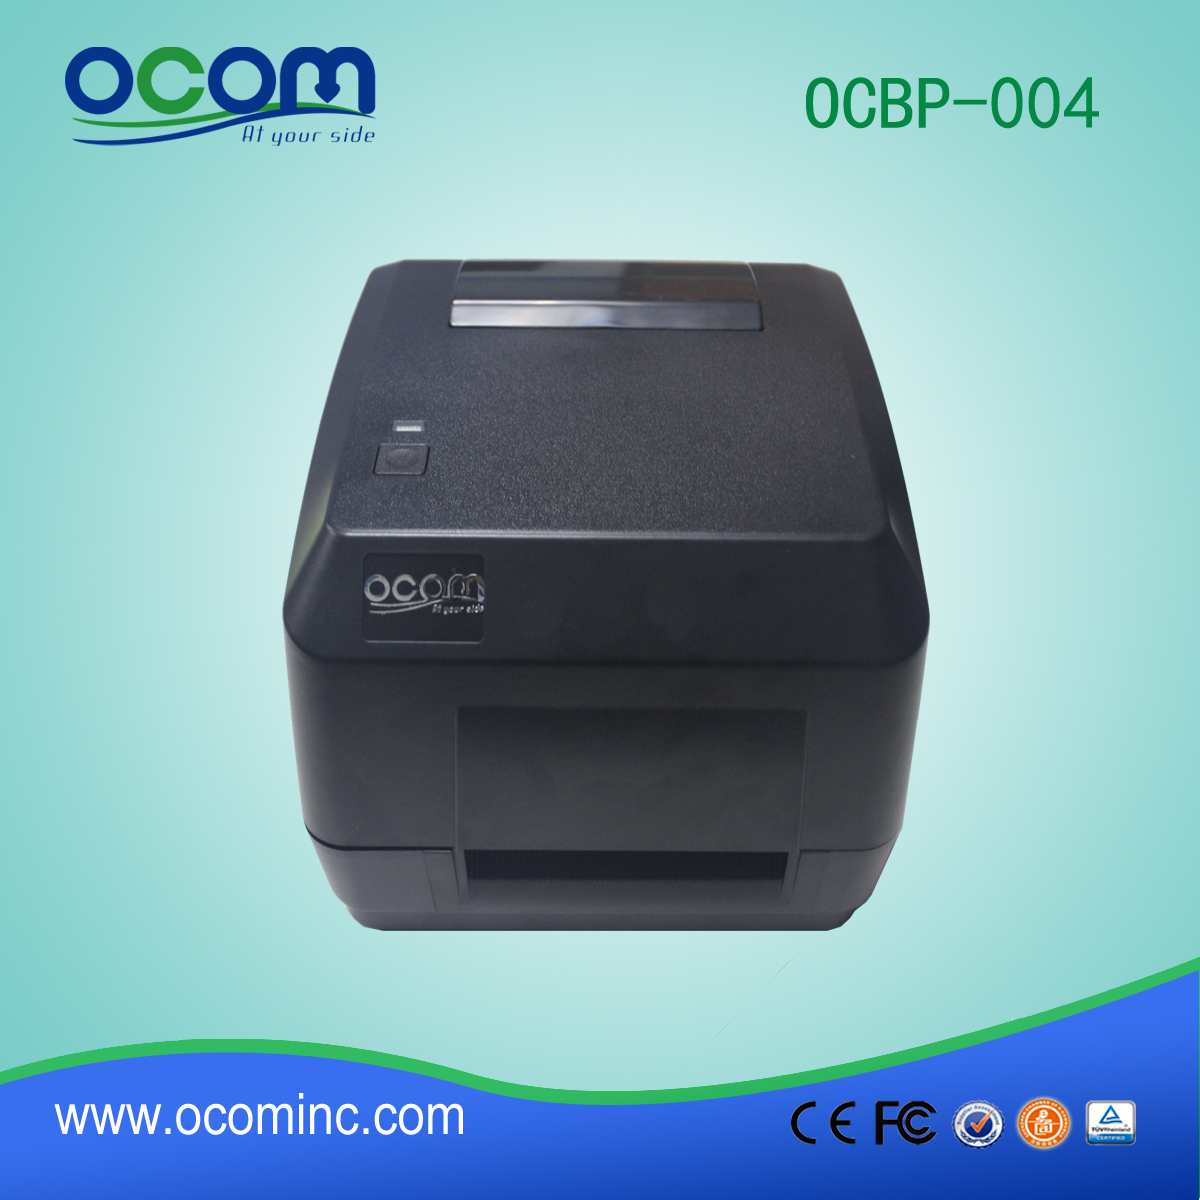 (OCBP-004) Hochwertige chinesische Thermotransferdrucker